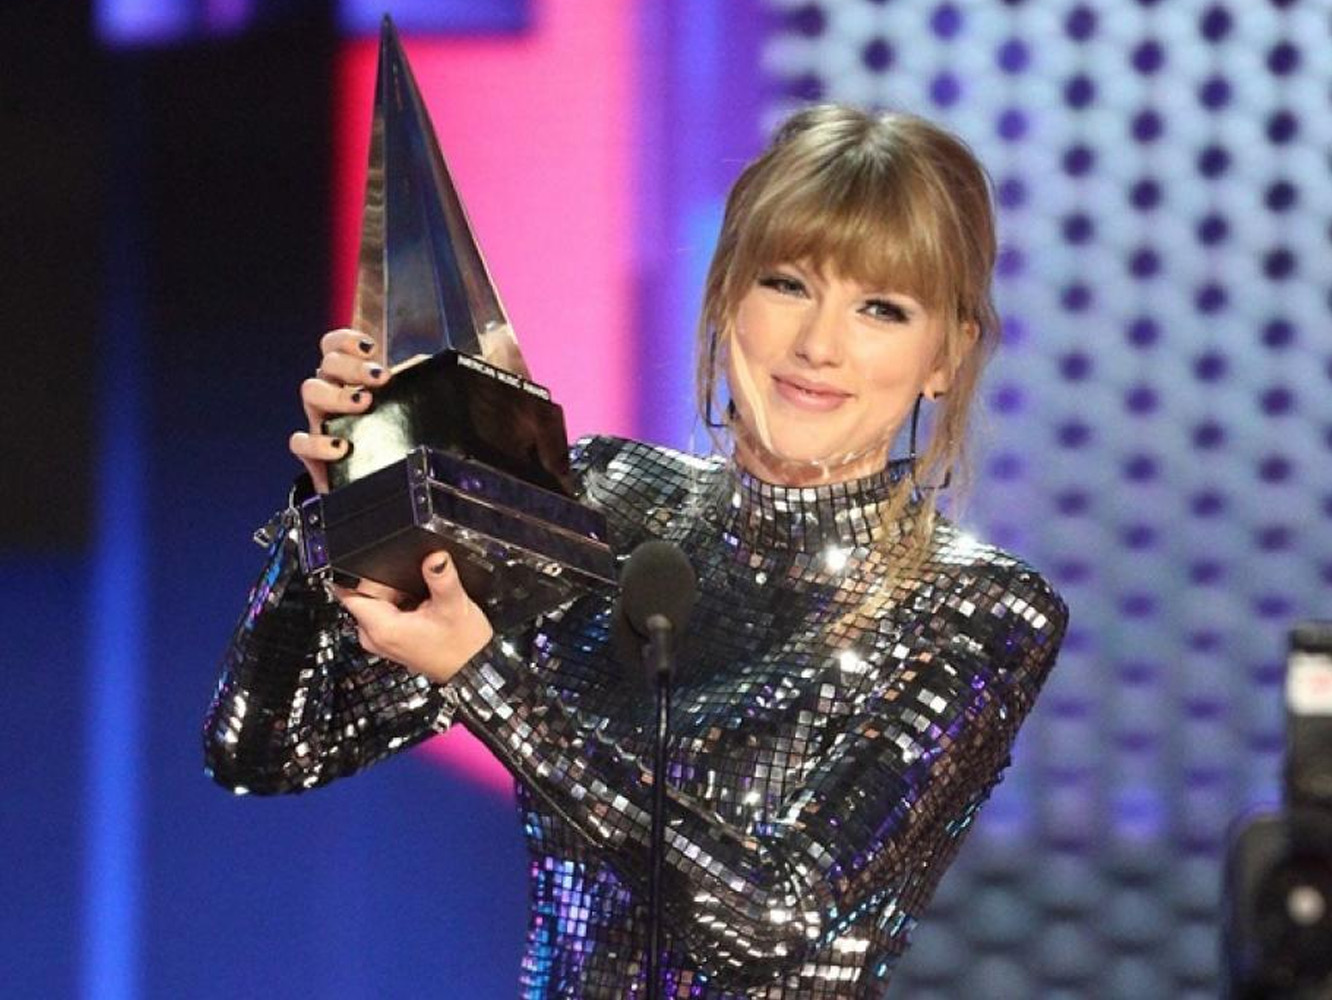  Premios AMA 2018 | Taylor Swift y Camila Cabello se reparten la noche, con algún WTF